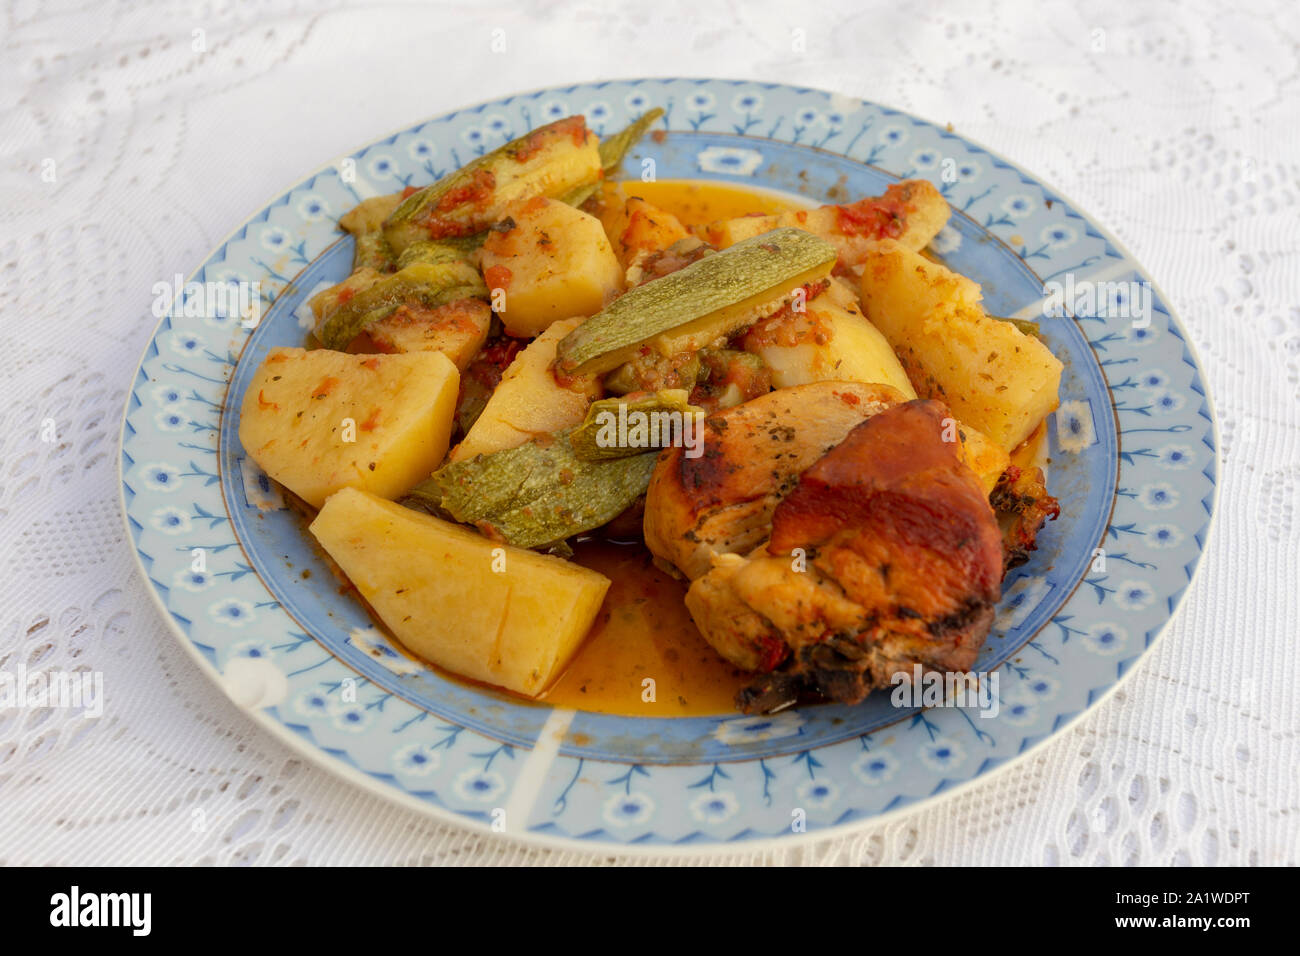 Une authentique Assiette de poulet au four crétois avec des pommes de terre et courgettes (zuccini) dans une riche sauce tomate et sauce d'huile d'olive aux herbes Banque D'Images